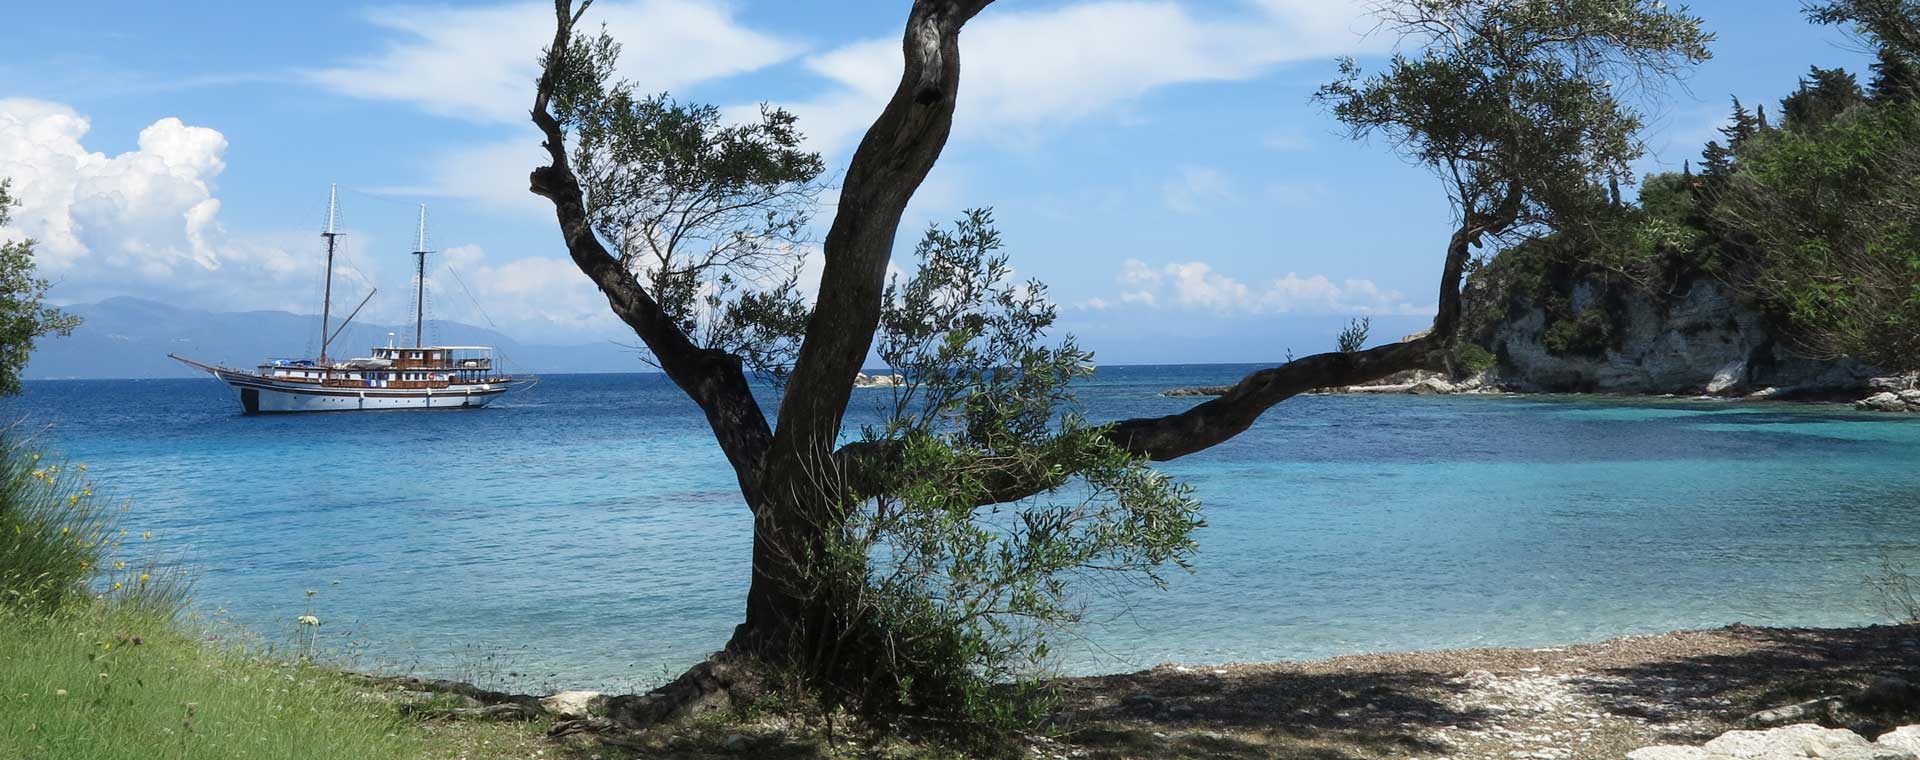 Corfou, Paxos : voyage en mer Ionienne